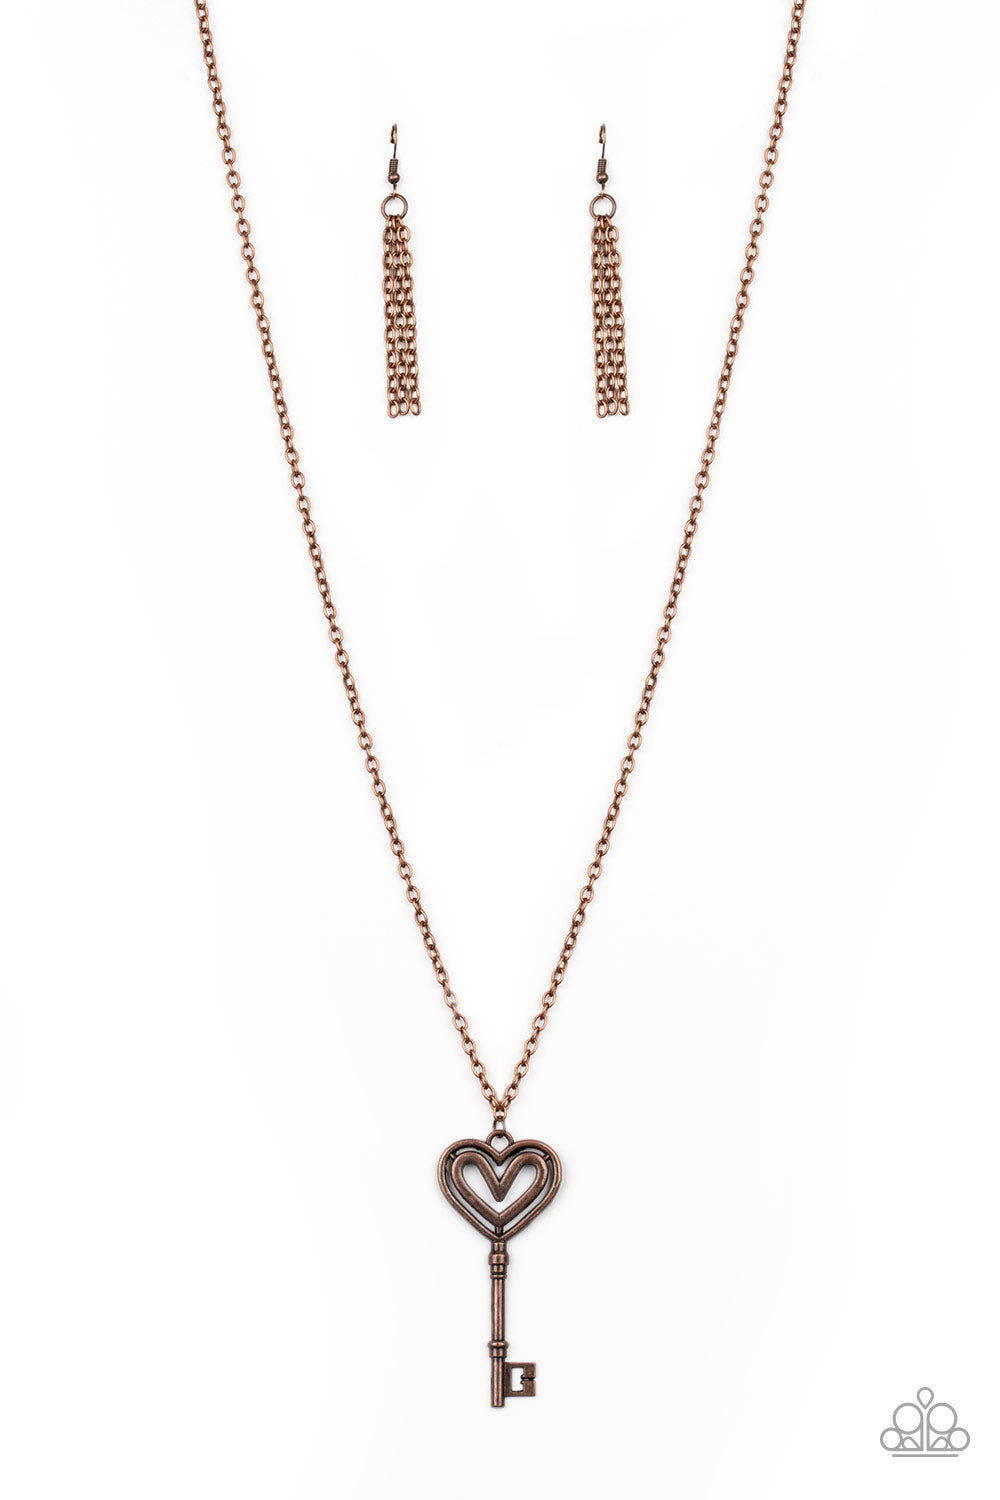 Unlock My Heart Necklace__Copper Key